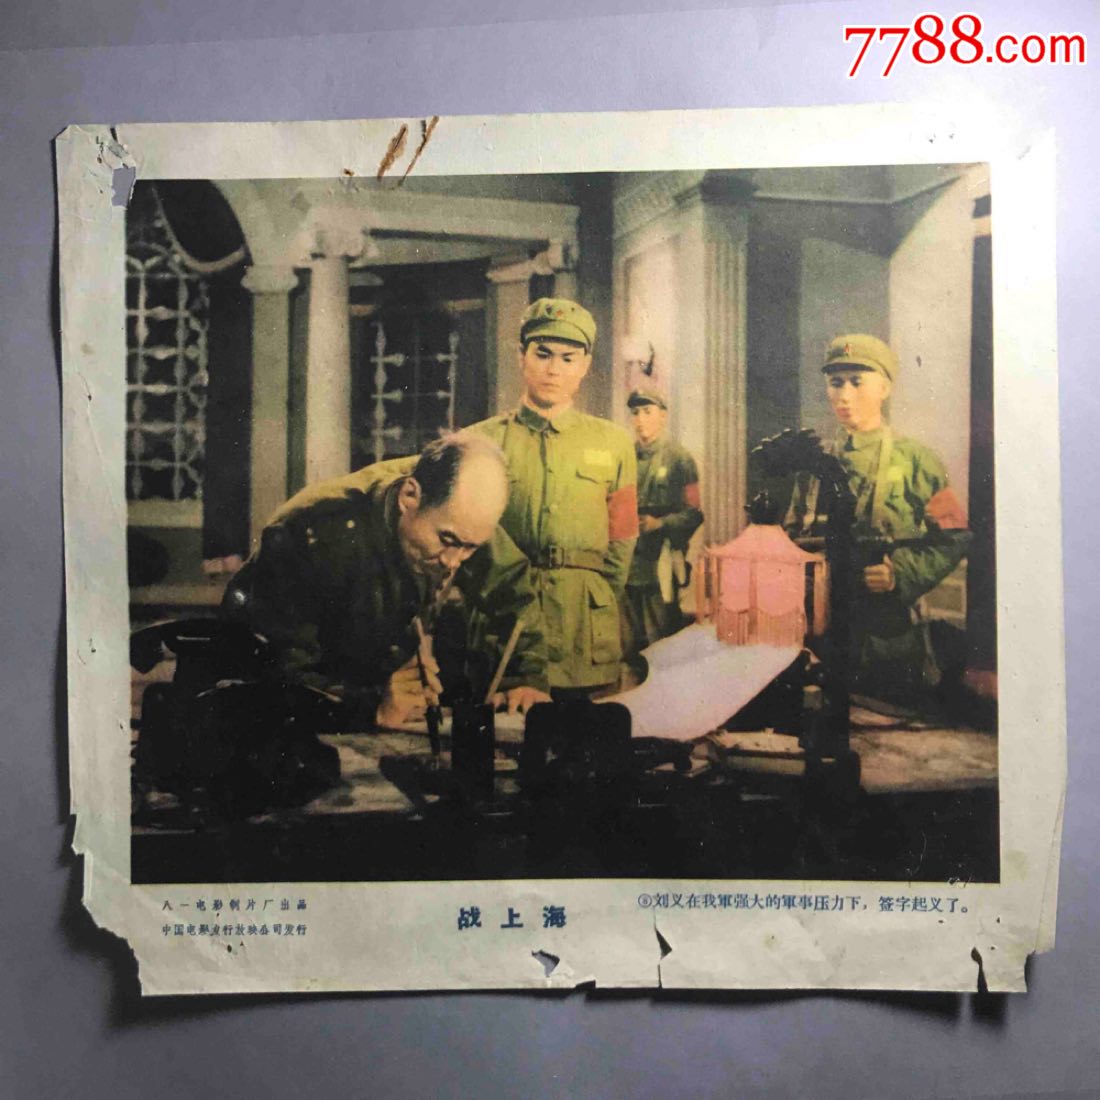 早期电影八一电影制片厂出品战上海电影剧照